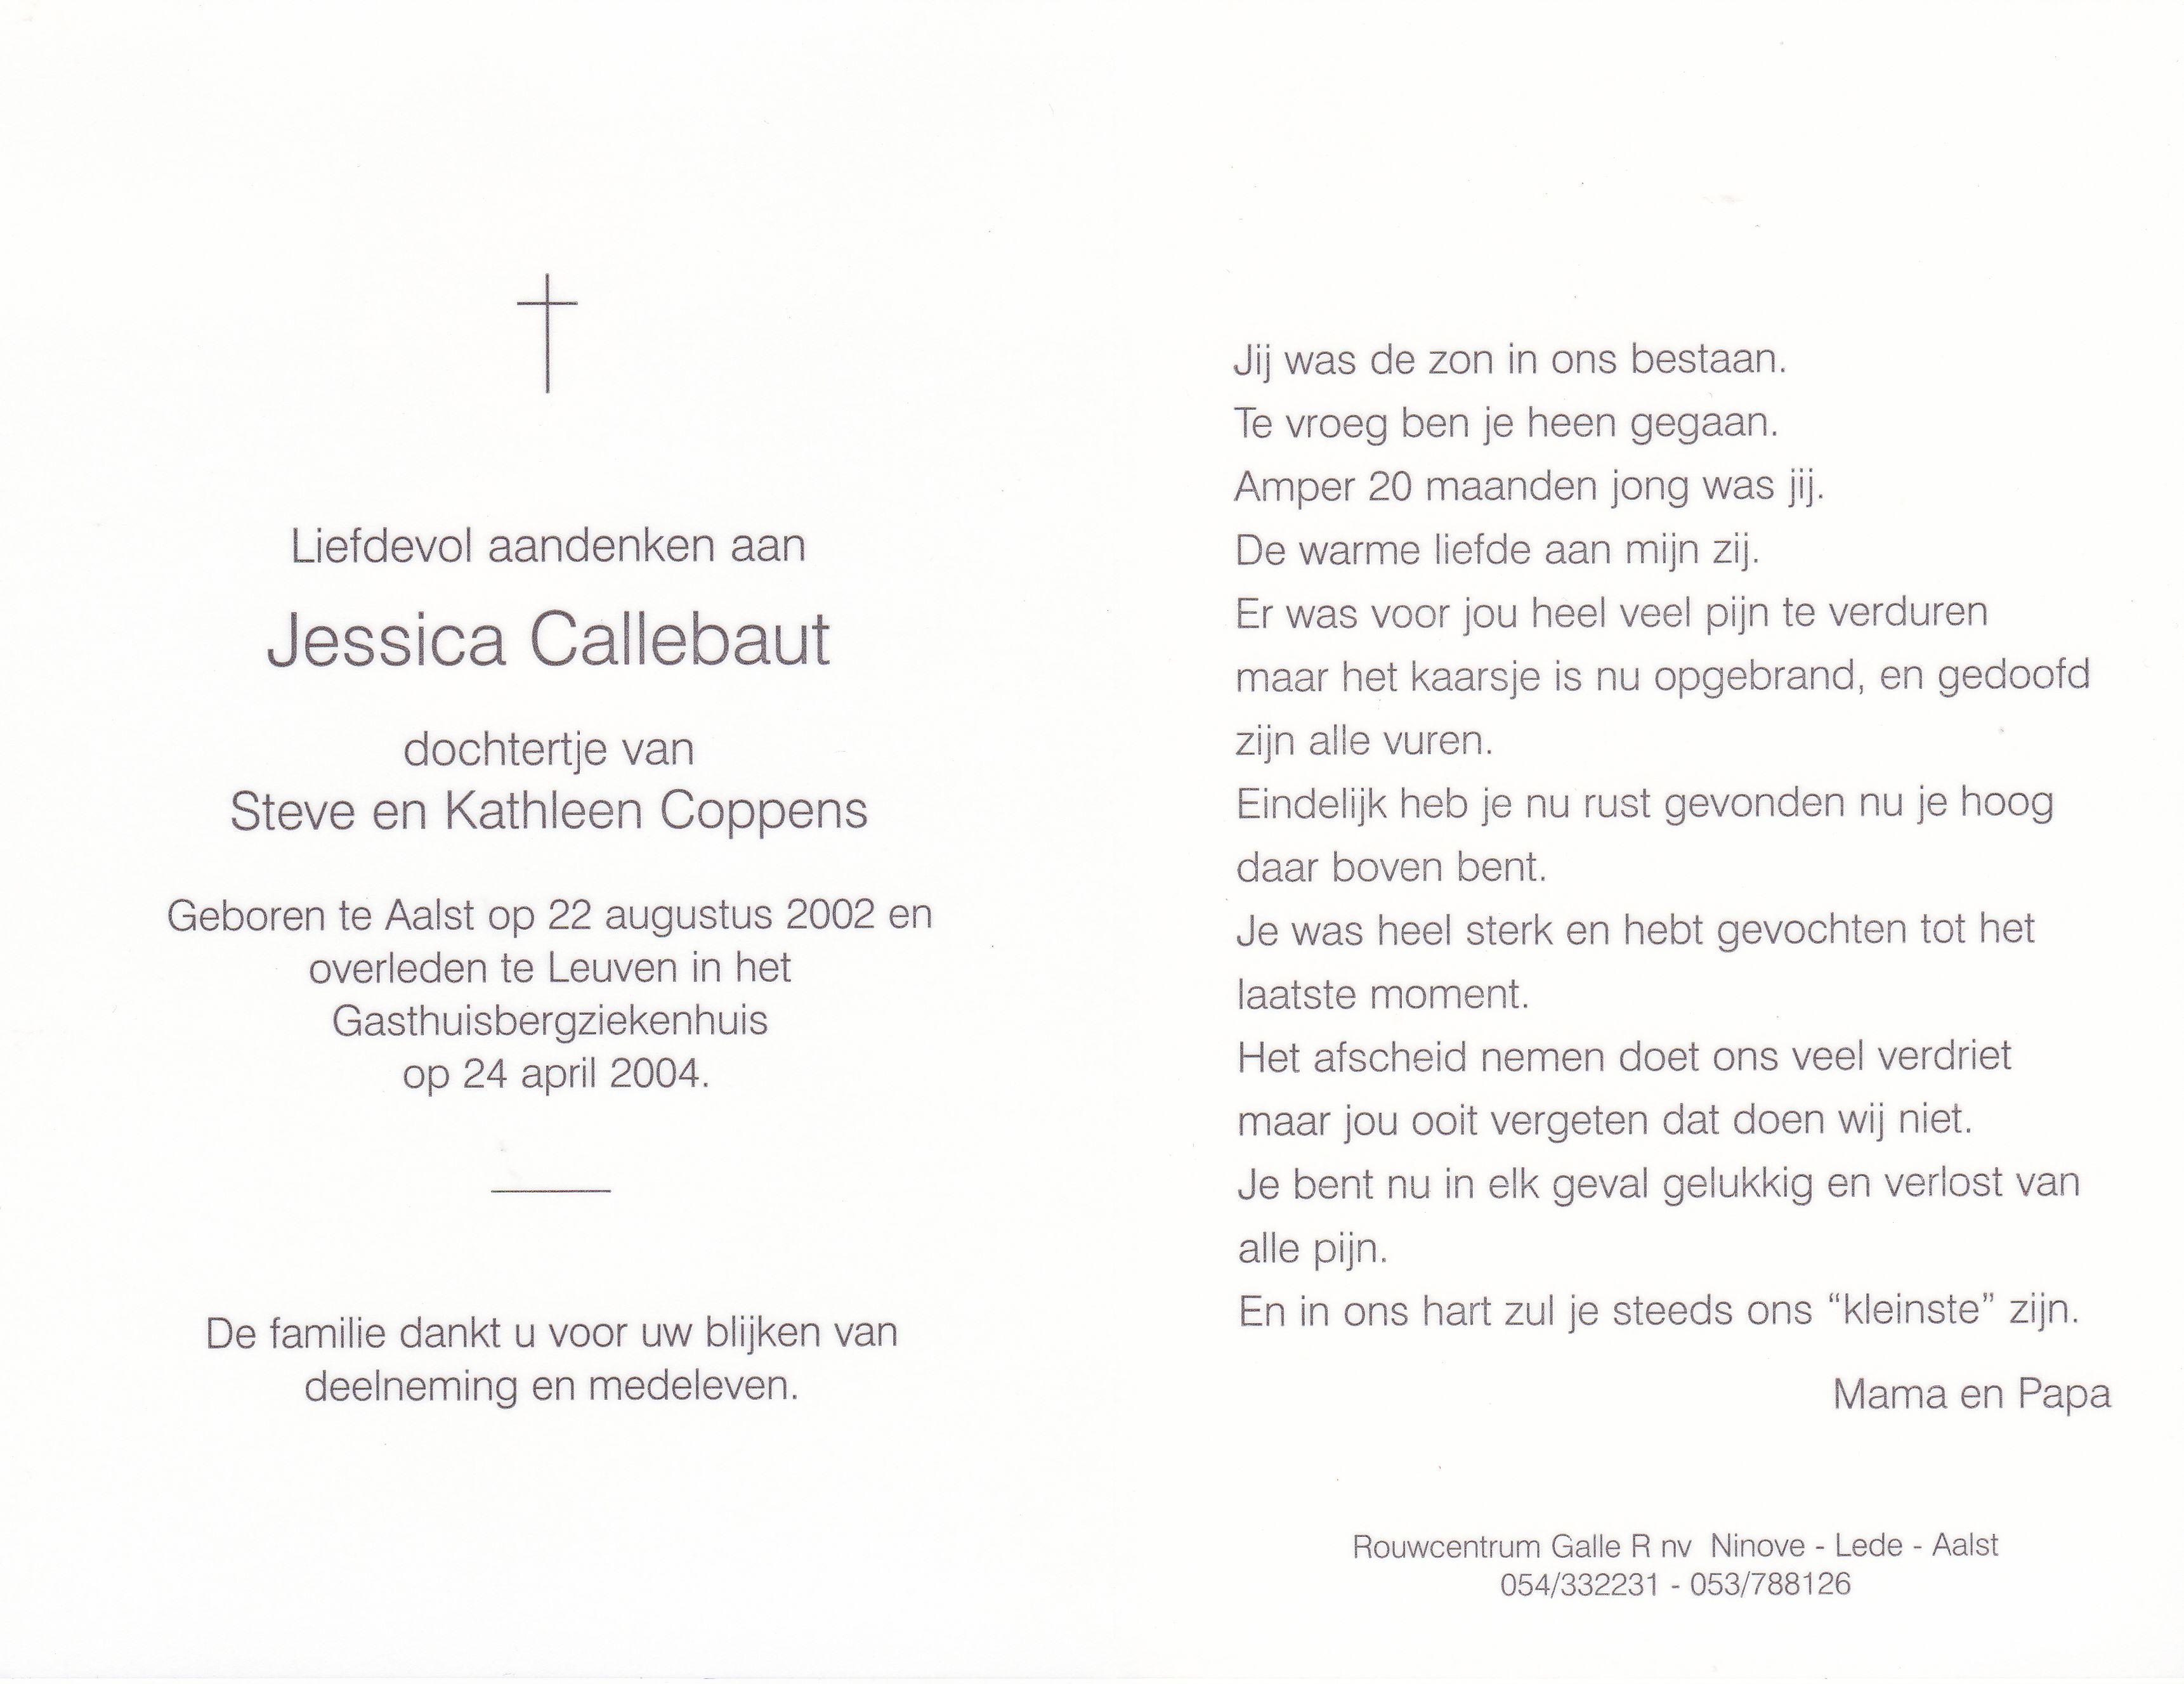 Callebaut Jessica